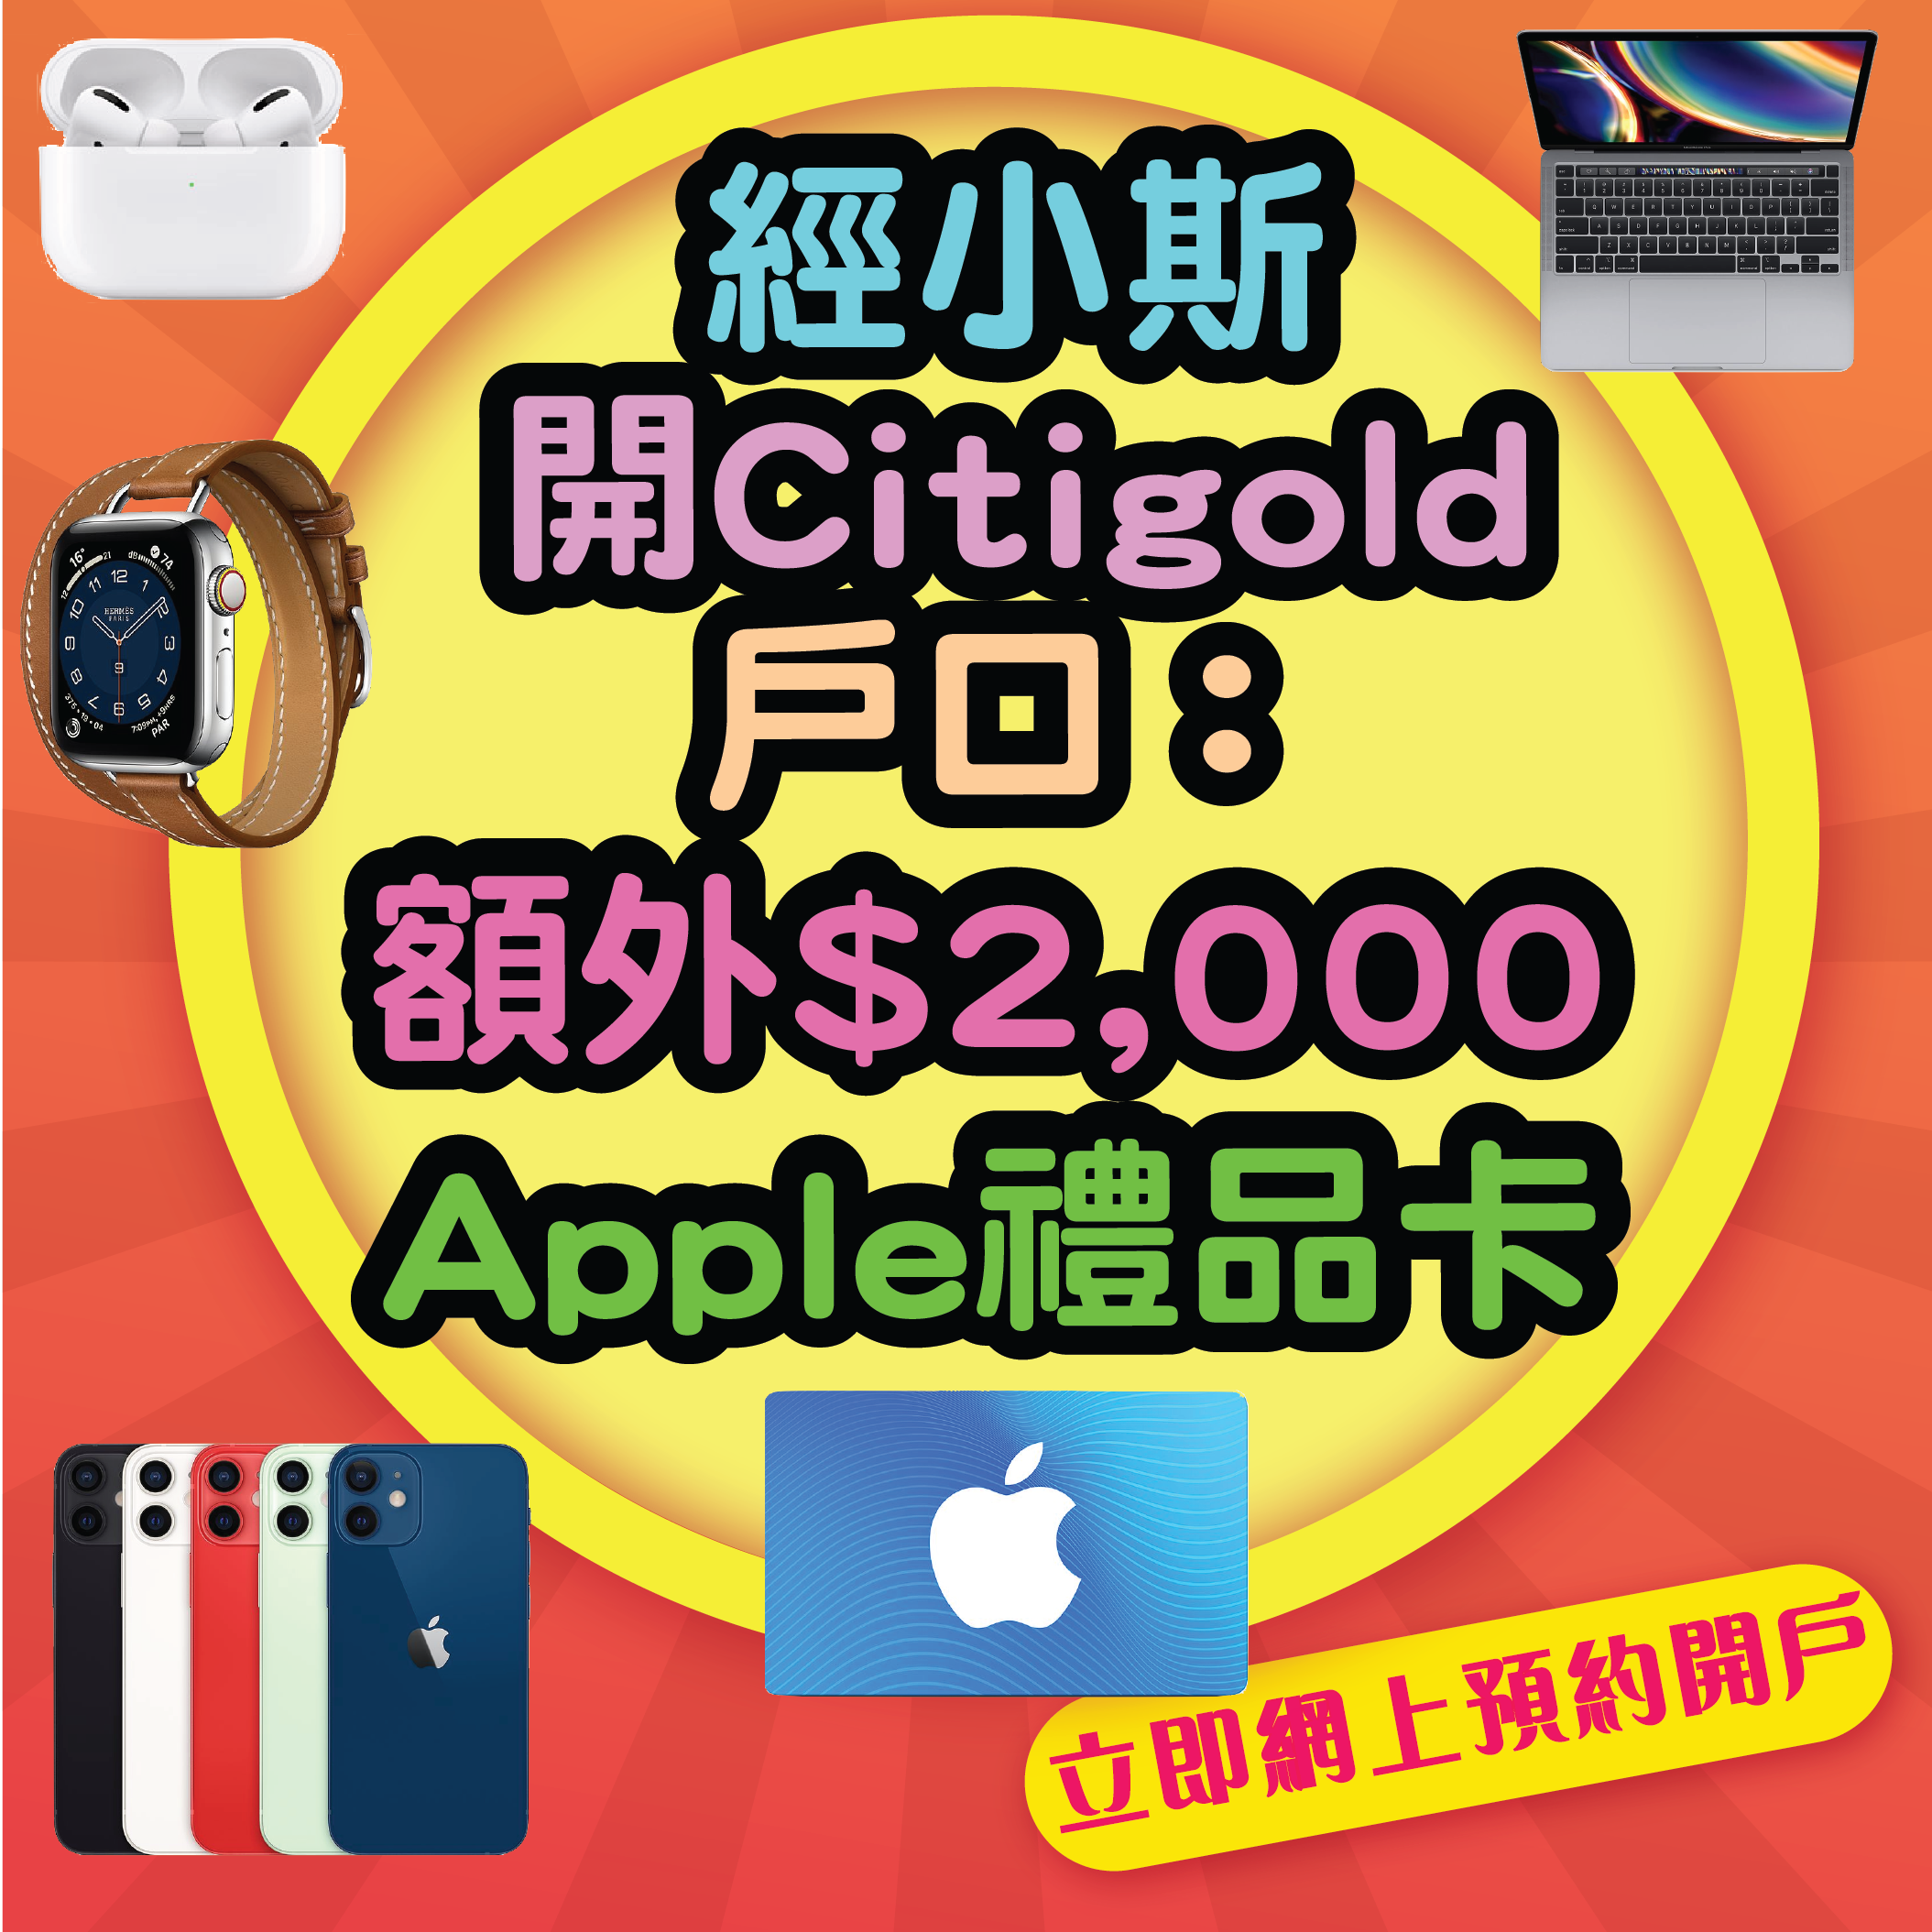 【開戶即有額外$2,000 Apple Gift Card】5月31日或之前經小斯申請Citigold有額外$2,000 Apple Gift Card！開戶仲有高達$38,800獎賞！